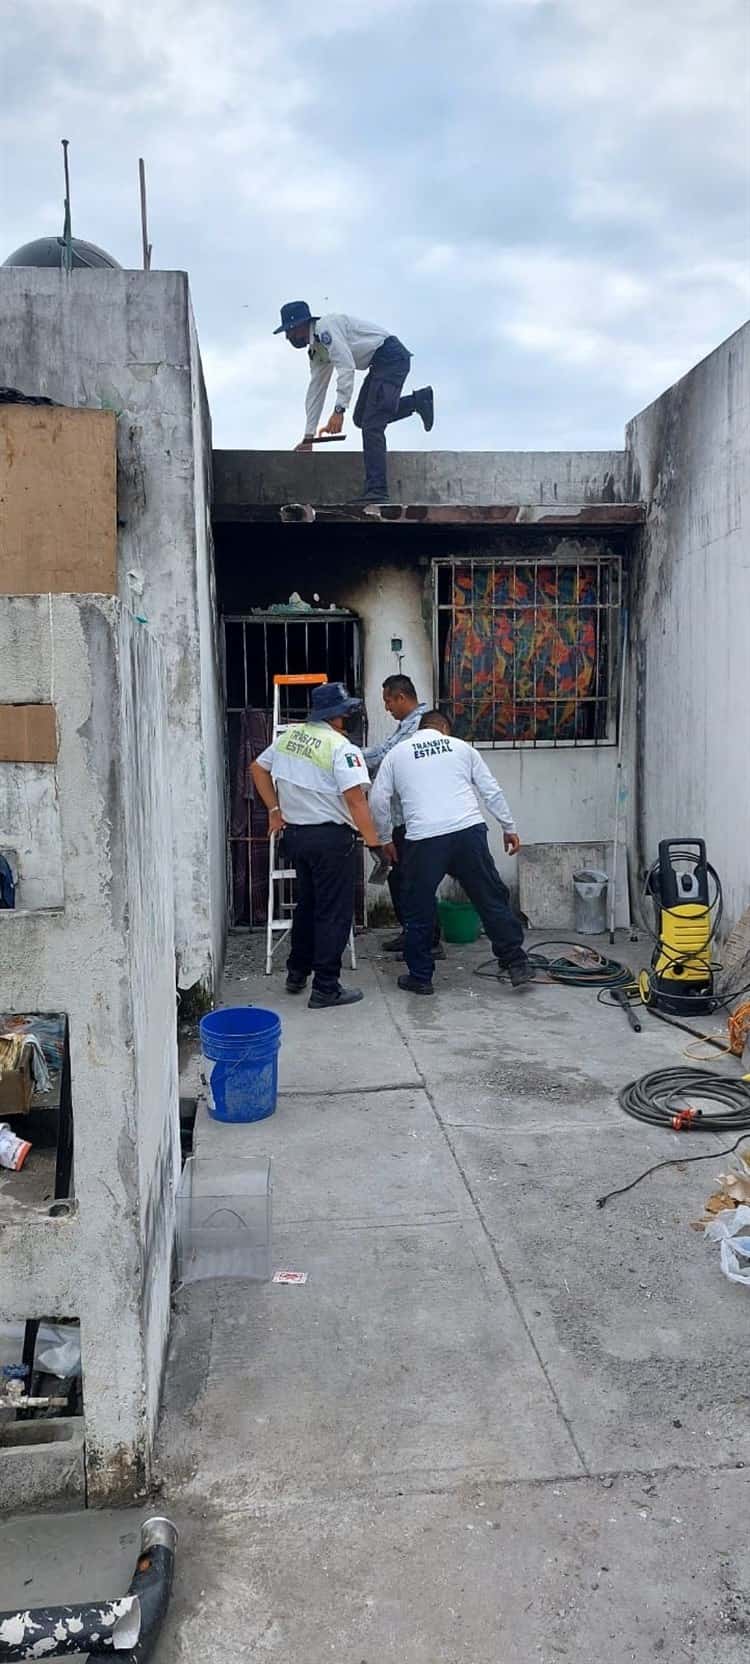 Oficiales de Tránsito de Manlio Fabio apoyan a víctimas de incendio en Veracruz